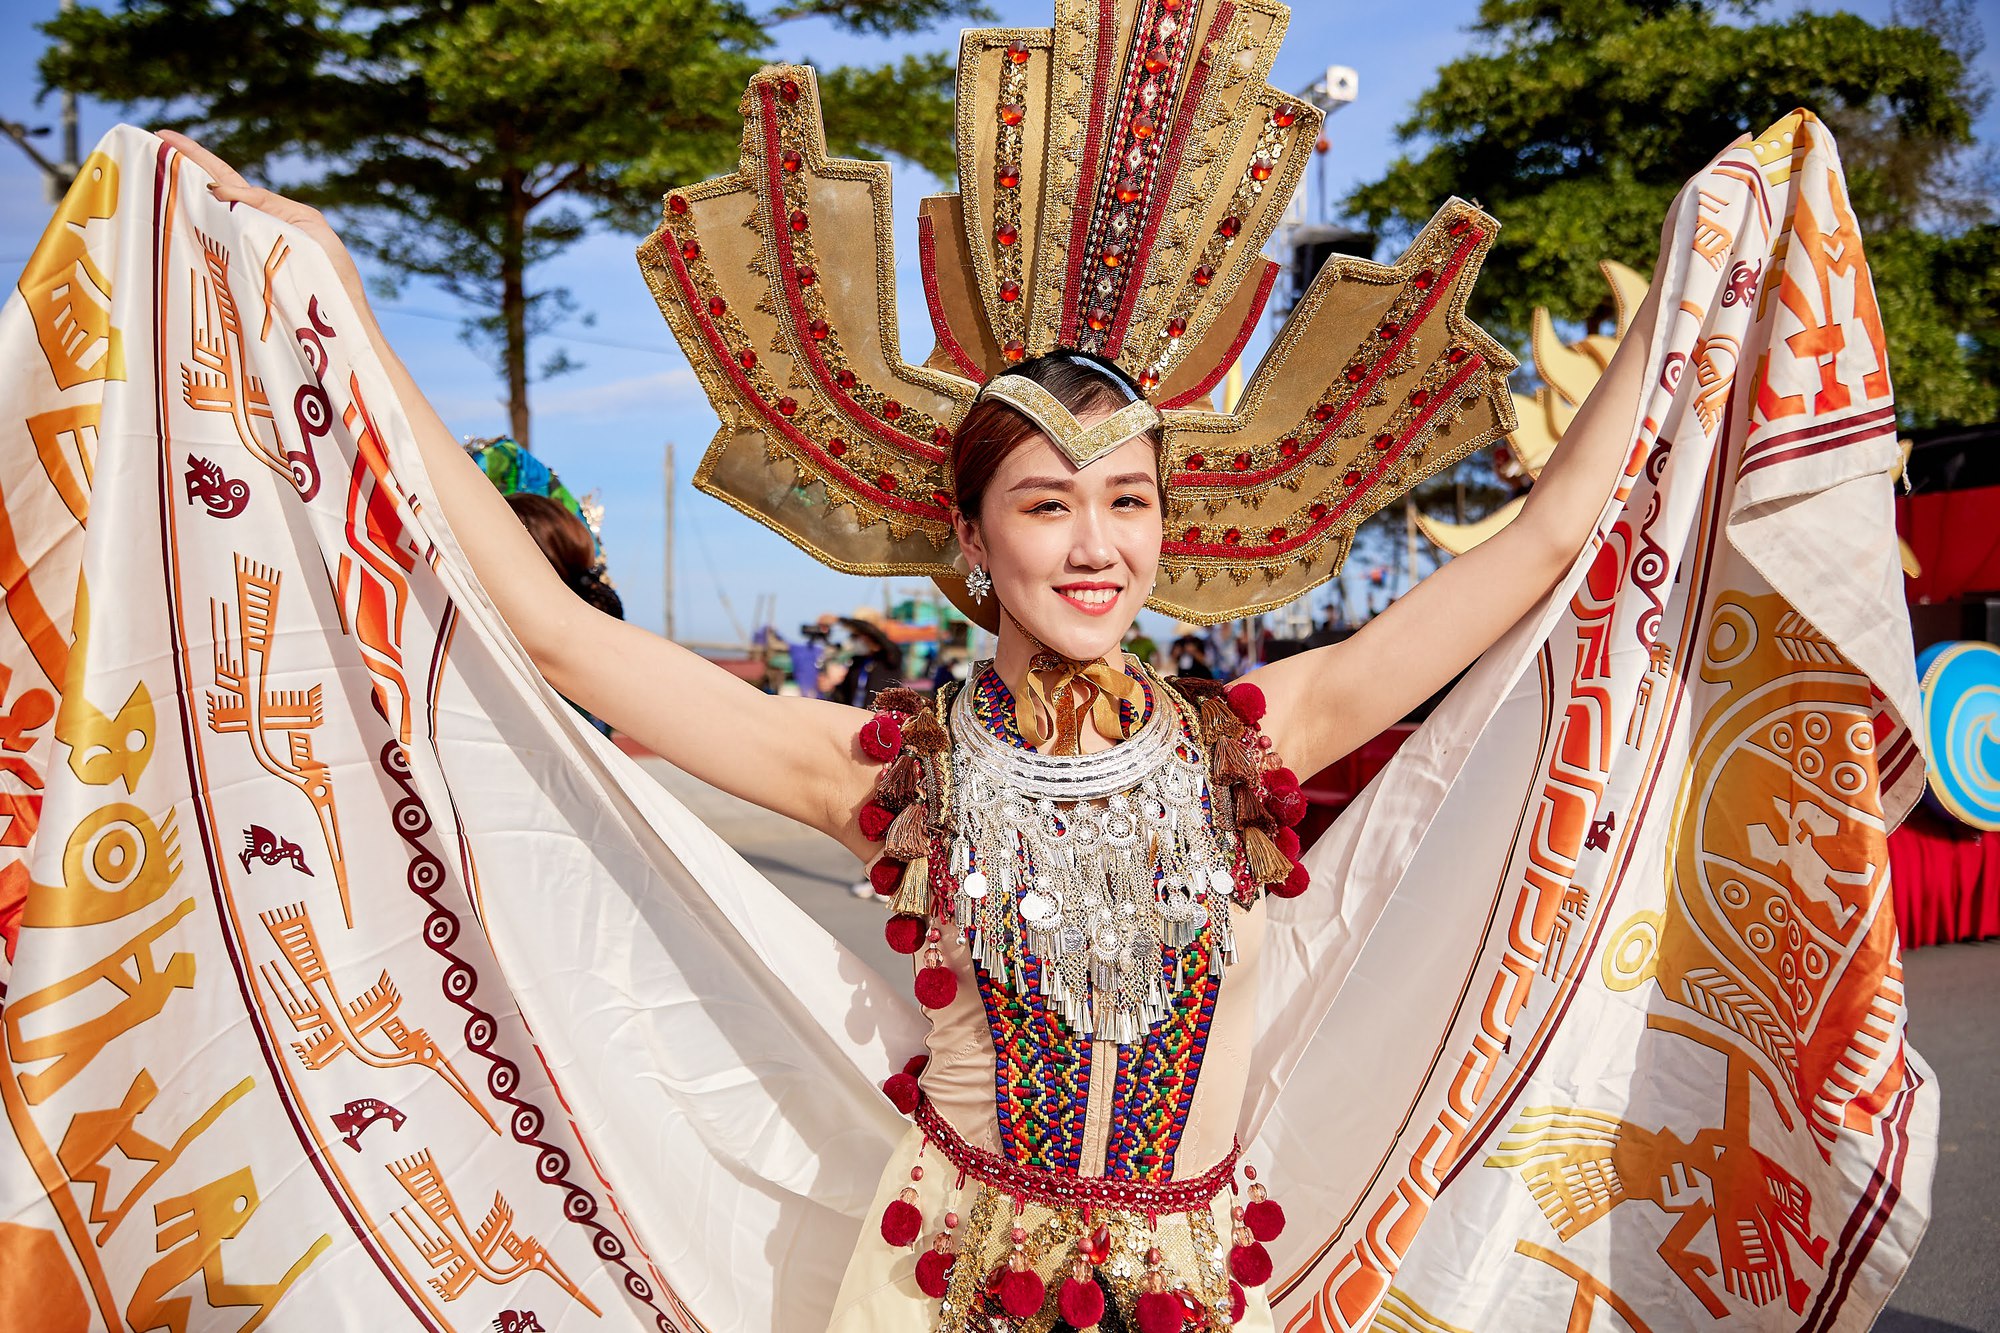 Du khách phấn khích với không khí Carnival rực rỡ sắc màu tại thành phố biển Sầm Sơn - Ảnh 9.